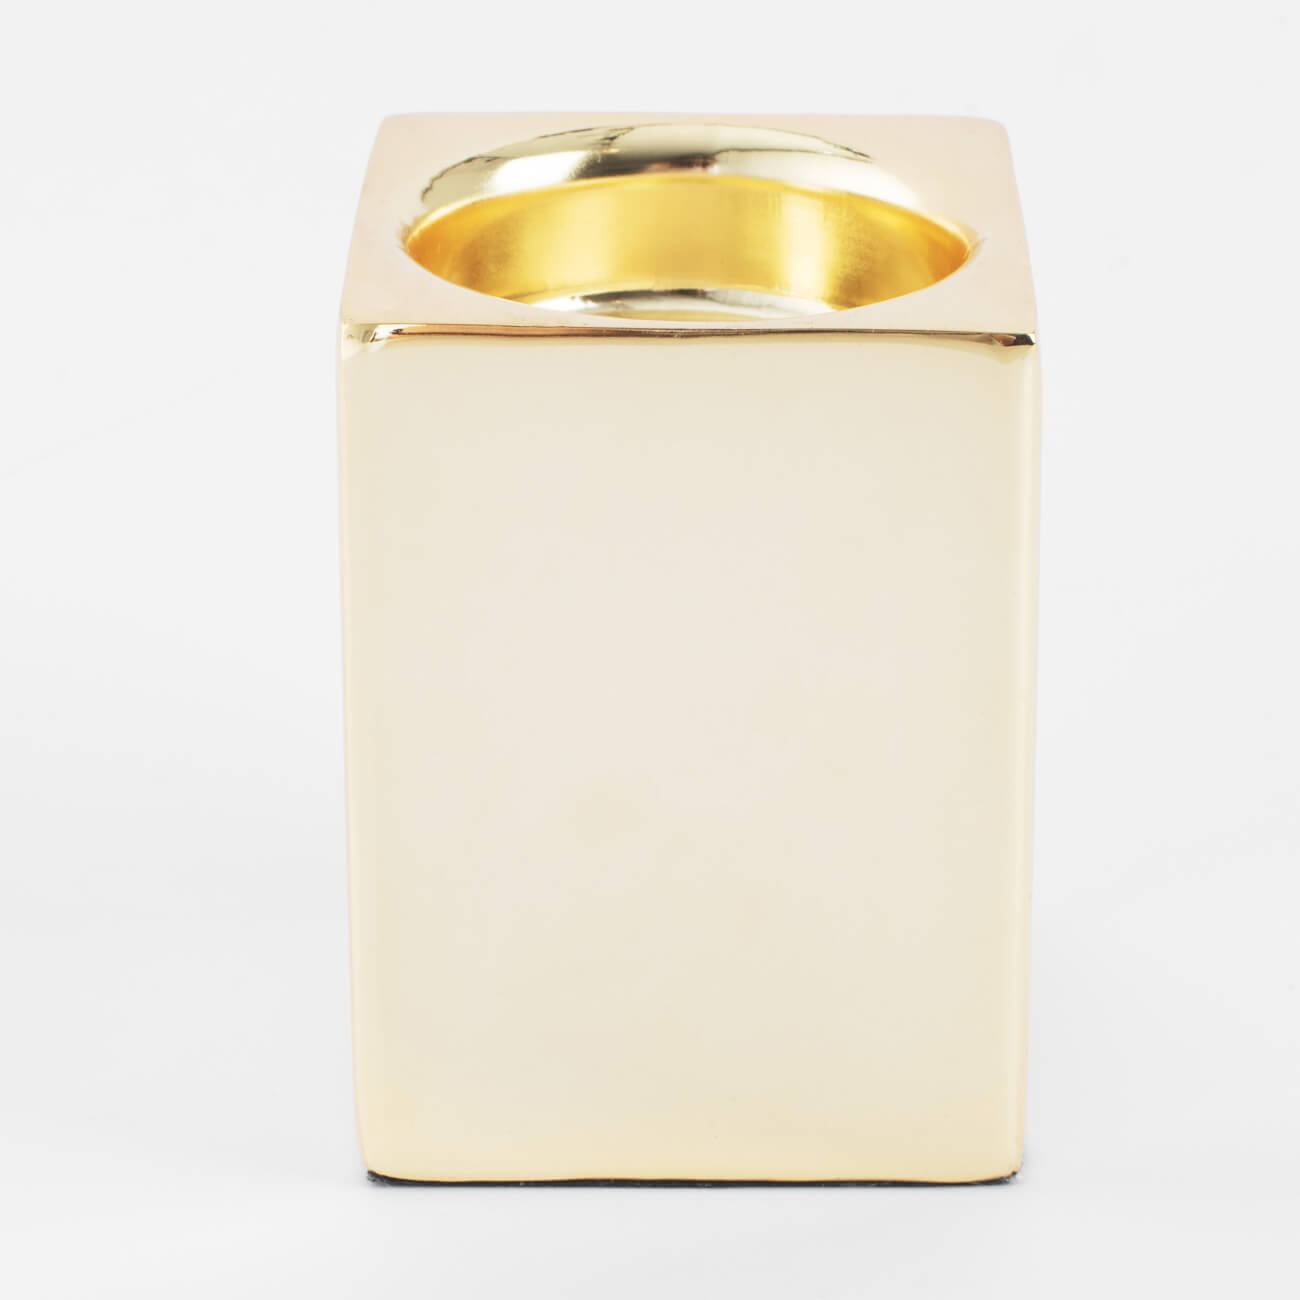 Подсвечник, 7 см, для чайной свечи, металл, золотистый, Fantastic gold подсвечник декоративный металл 3 свечи 11х29 см y6 10456